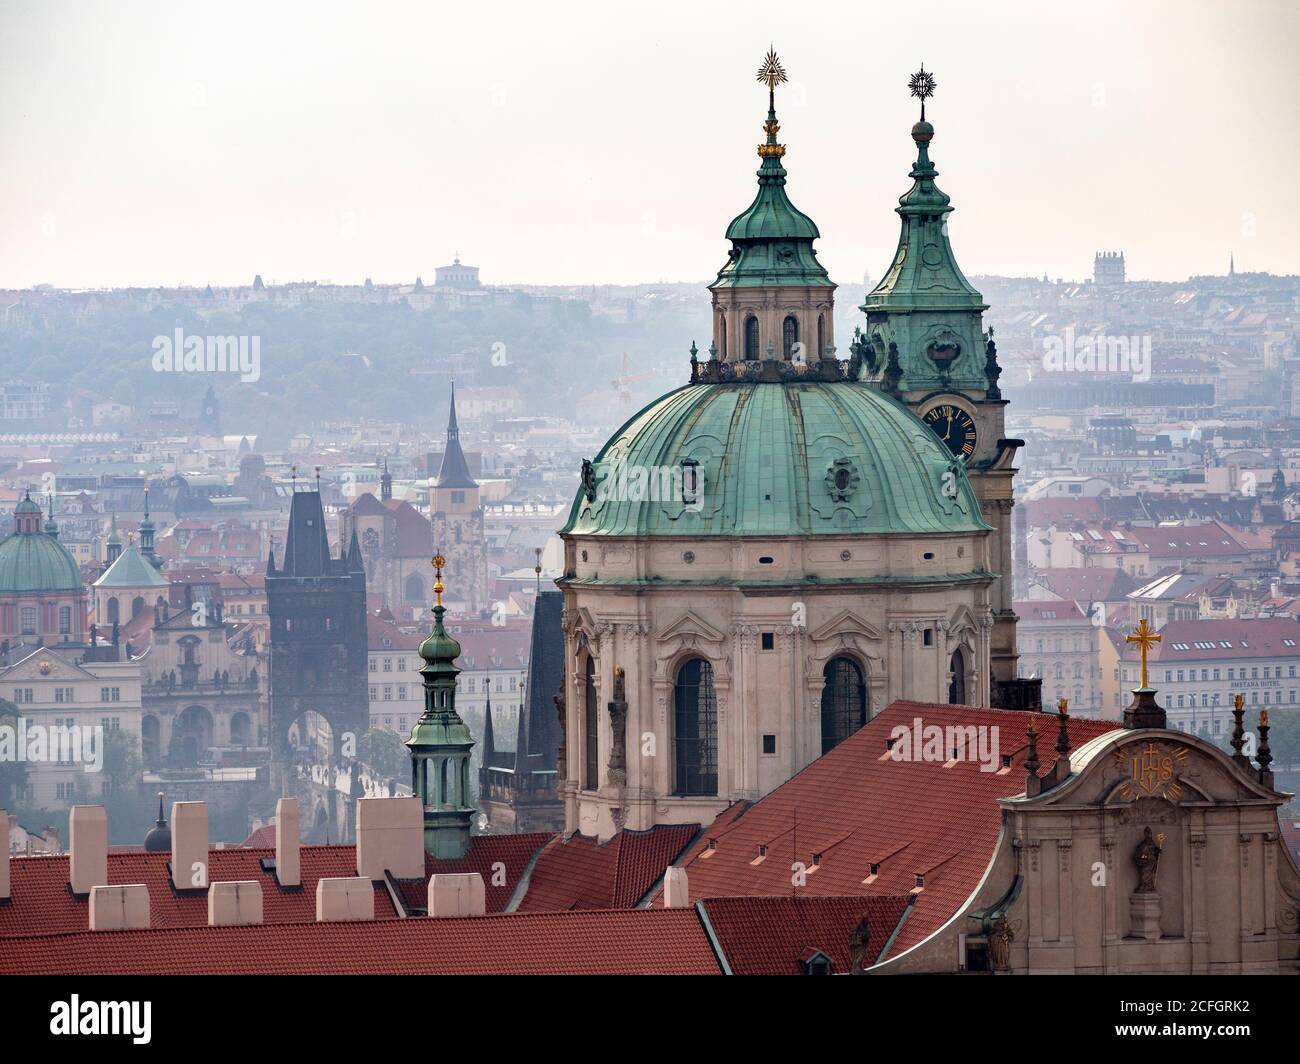 Praga desde el Castillo: Una vista de la ciudad a primera hora de la mañana y sus agujas desde el recinto del castillo. La cúpula de San Nicolás domina el foregorund con el Puente de Carlos en el medio. Foto de stock